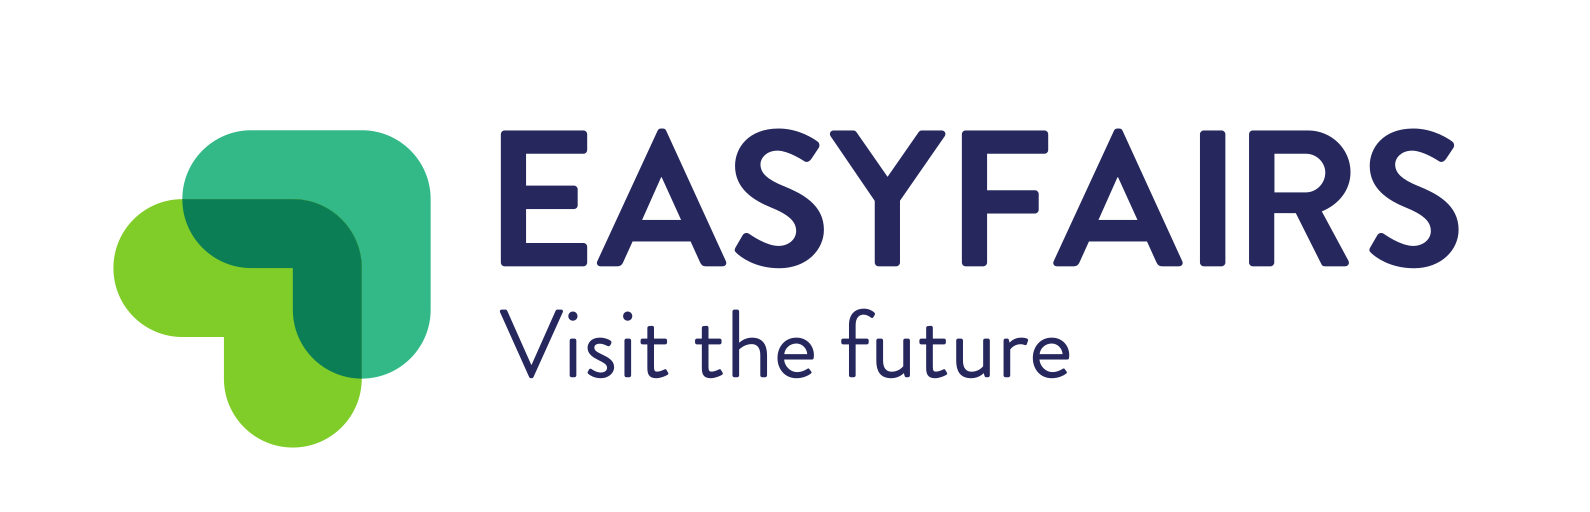 Easyfairs emprende nueva estrategia y unifica su marca